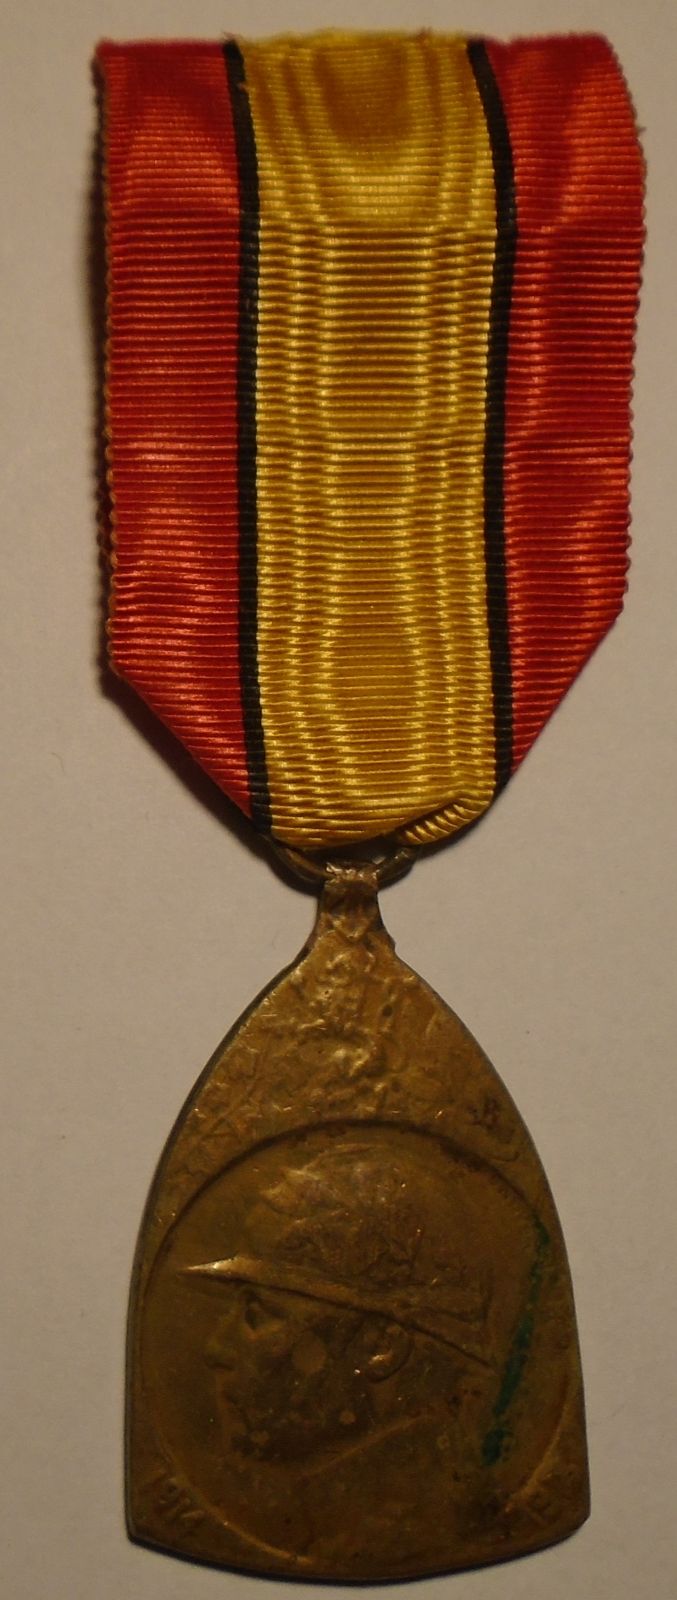 Belgie koloniální medaile 1914 - 1918